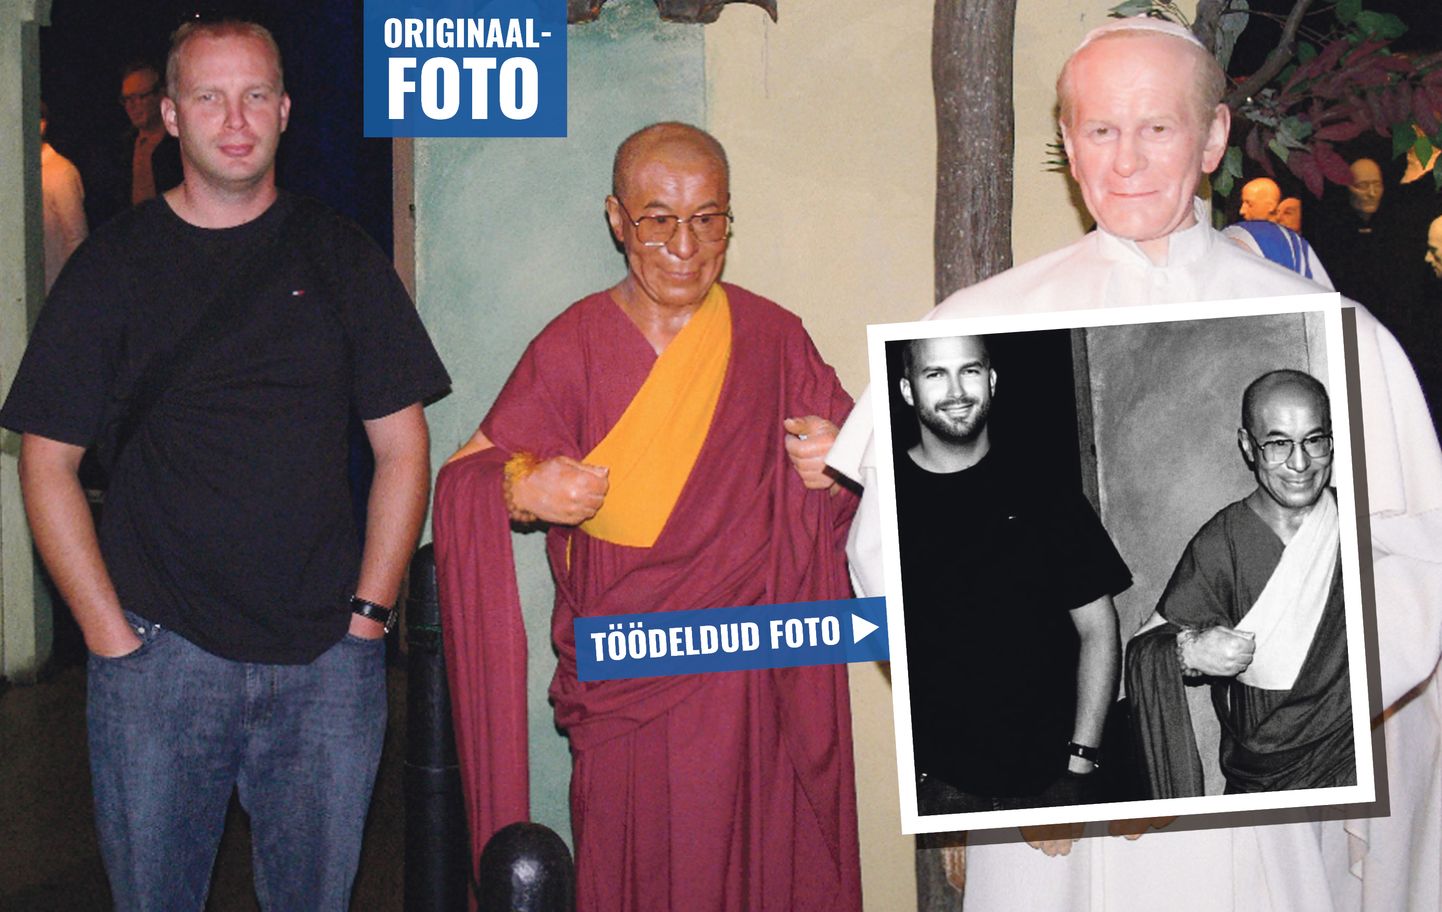 Möödunud nädalal ütles Tamm Saarte Häälele, et fotod, millel ta poseerib Araabia printsi ja dalai-laamaga, on tehtud vahakujudega. Eile saatis ta toimetusele kahe eelmise artikli juures avaldatud pildi originaalid. Tamm kirjutas juurde, et dalai-laama on vahakuju ning Araabia printsiga kohtus ta kogemata. Dalai-laama pildile pani ta enda sõnul vaid filtri peale, nägu väidetavalt ei töödelnud.